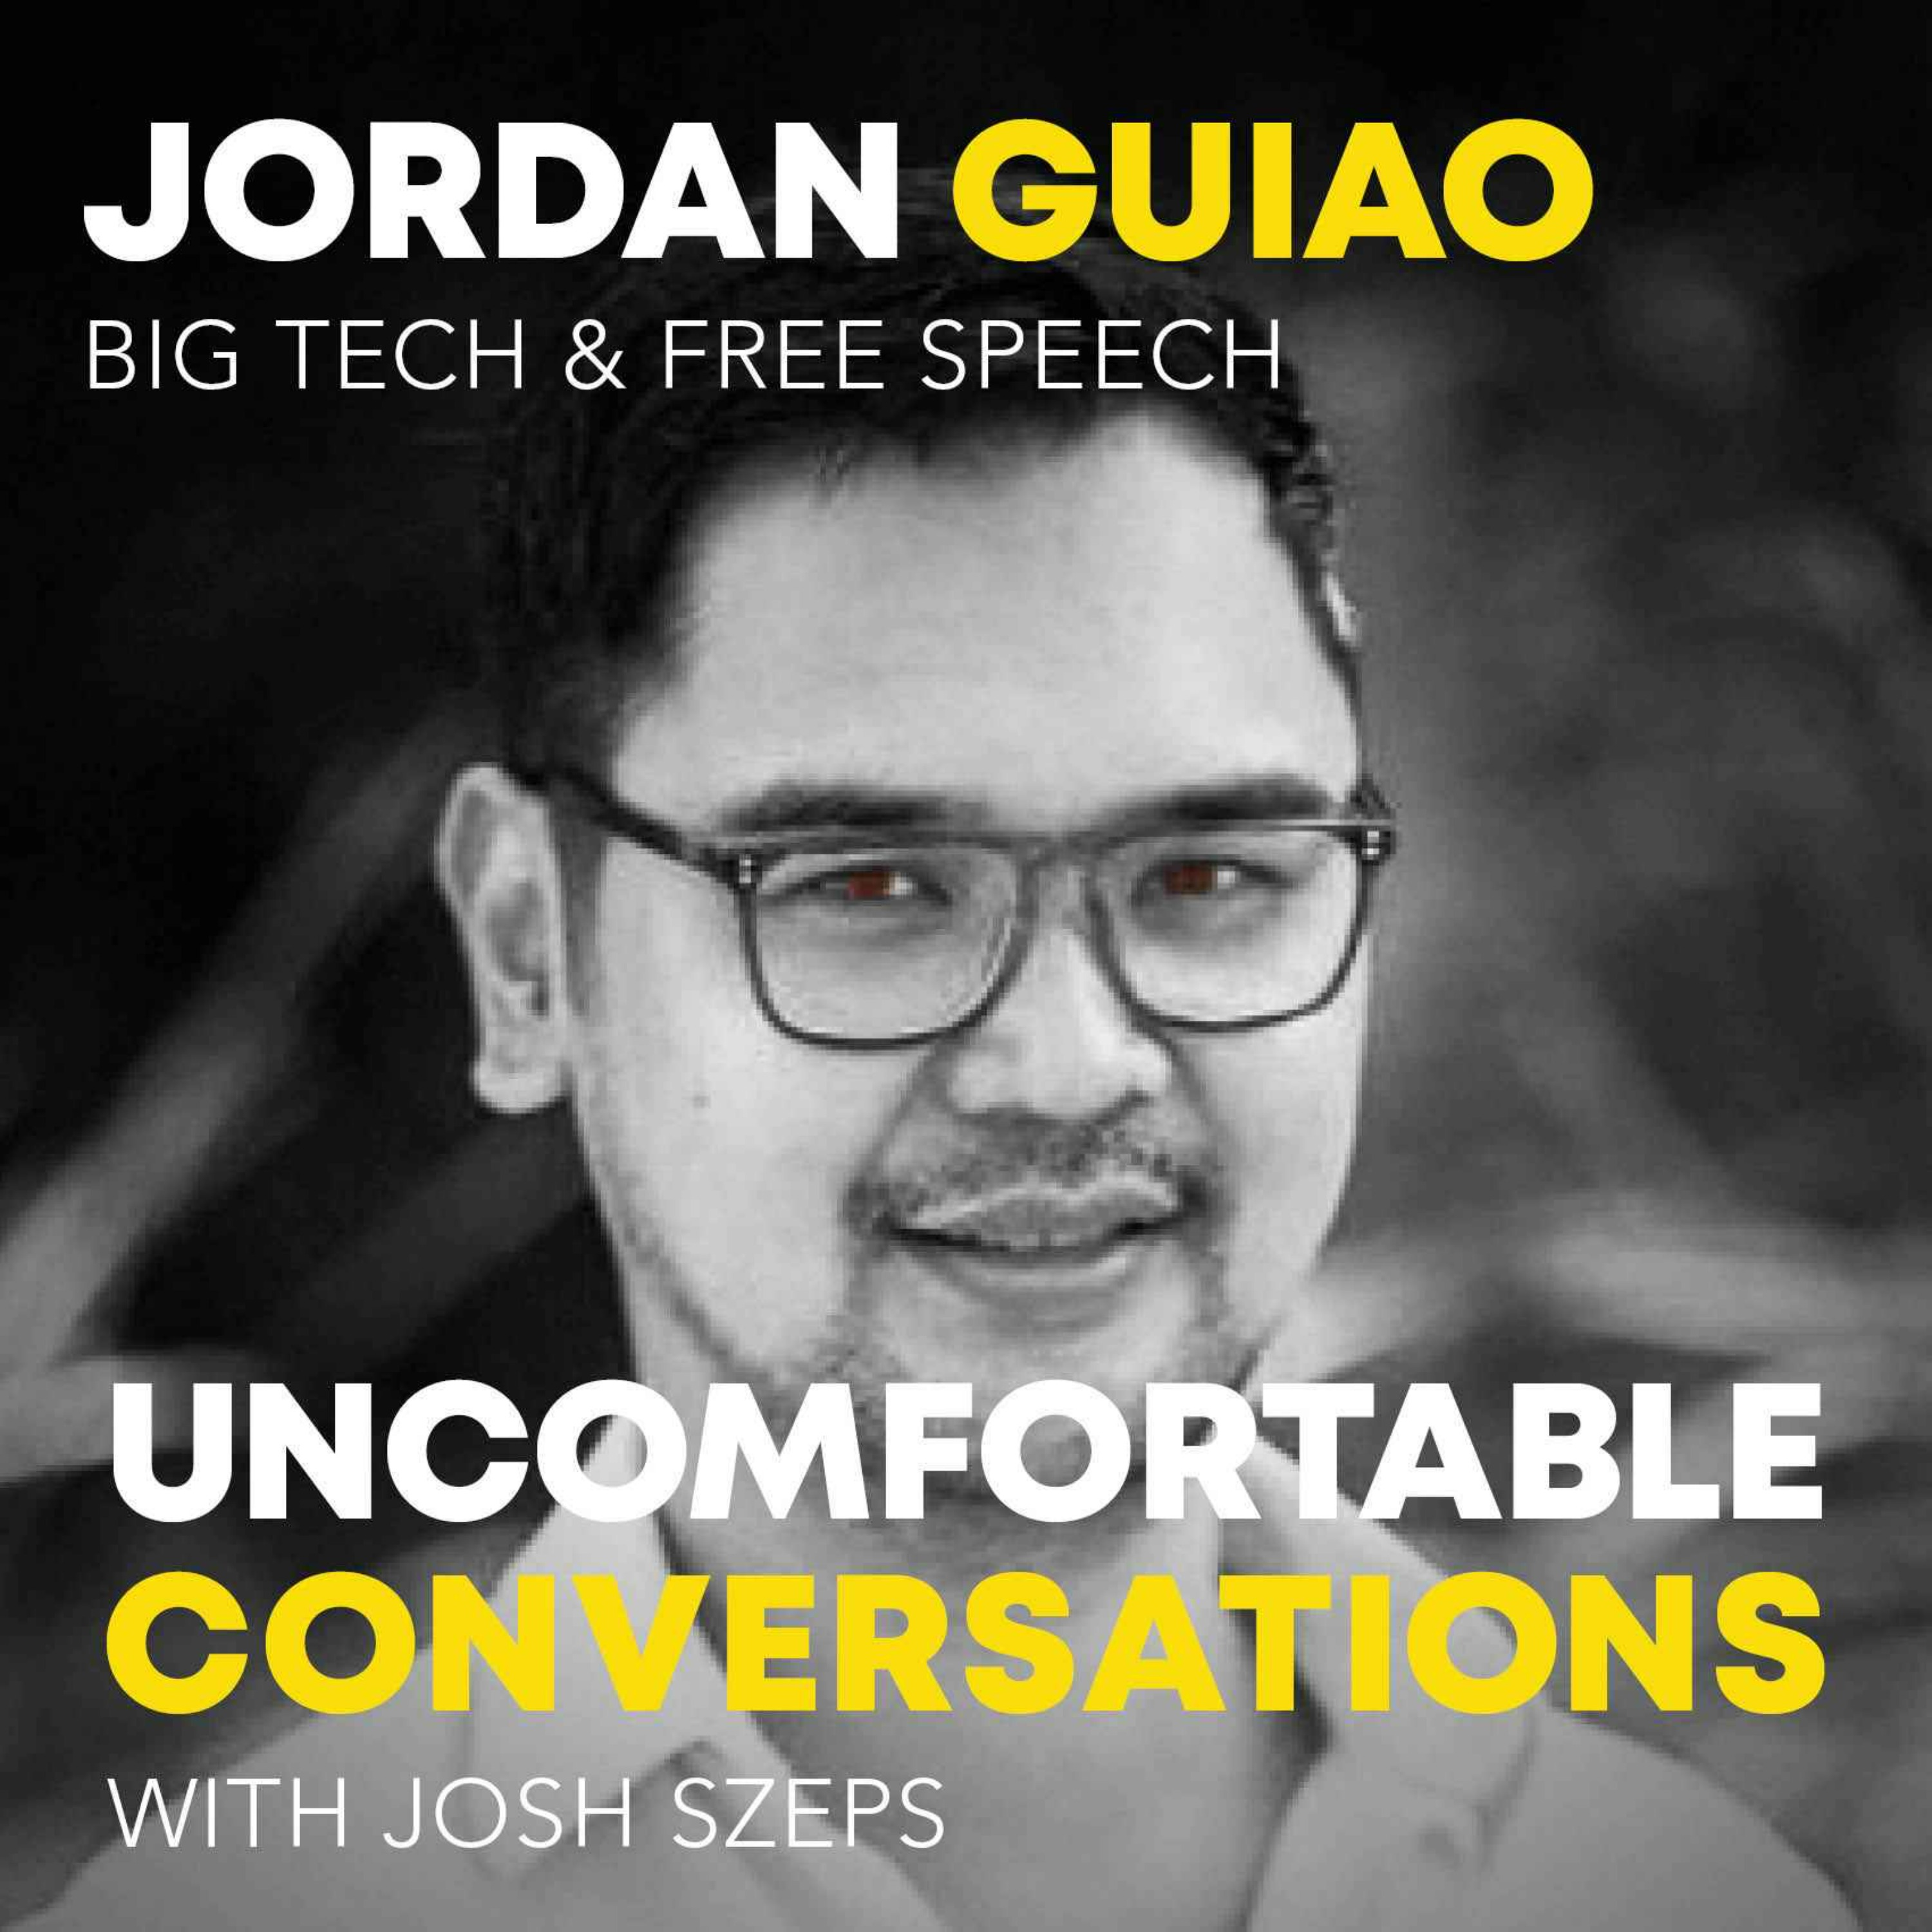 "Big Tech & Free Speech" with Jordan Guiao